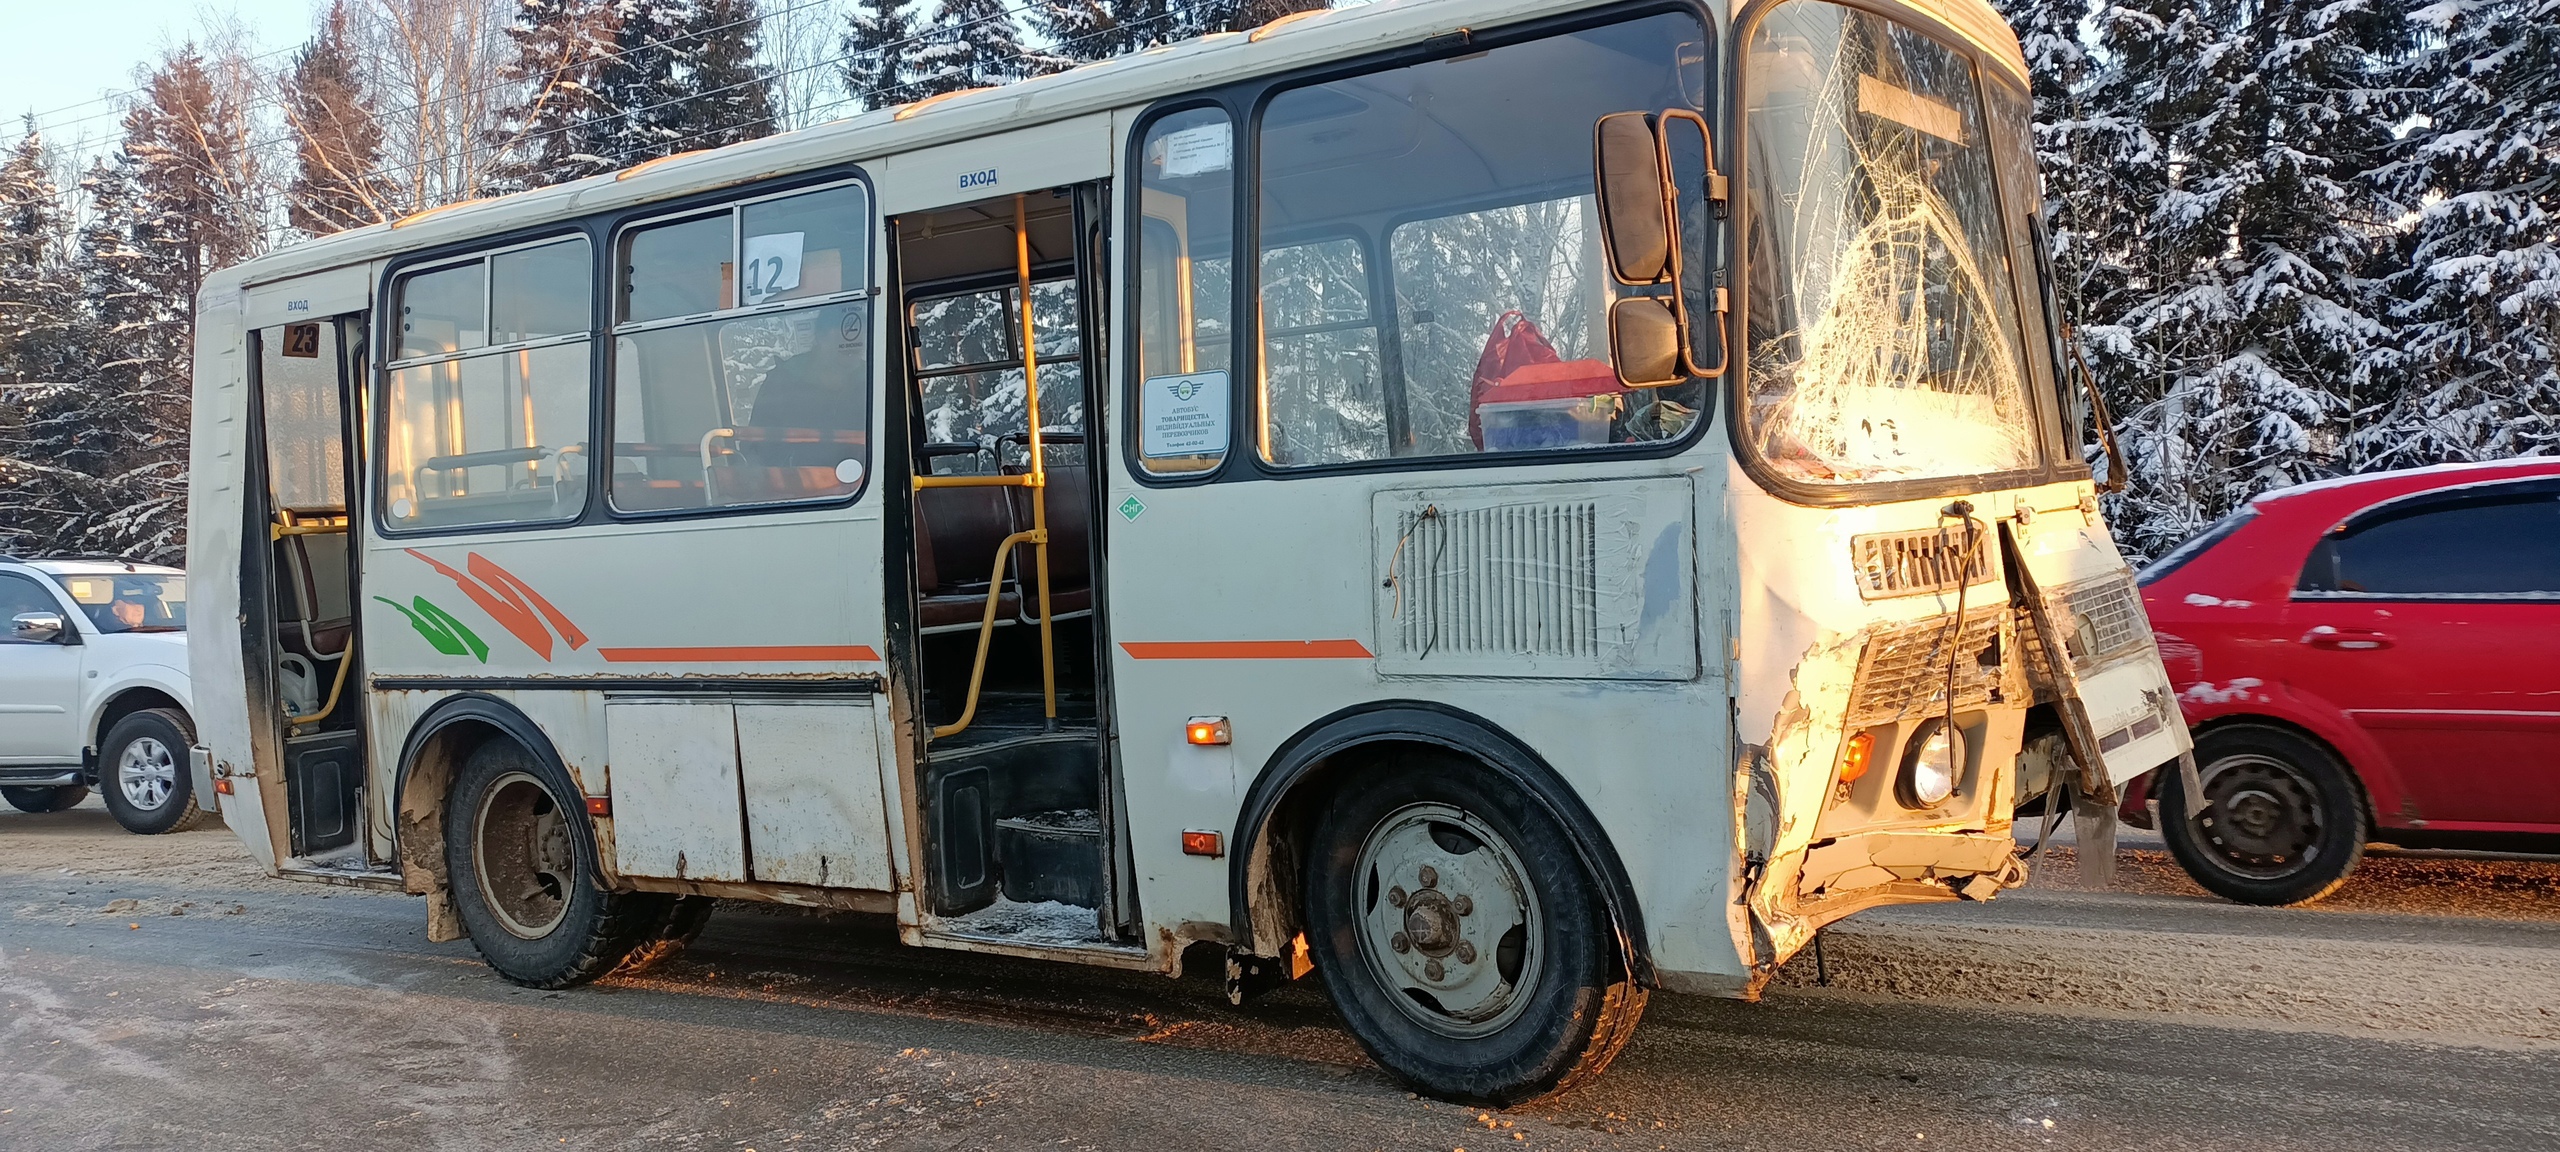 На трассе между Сыктывкаром и Эжвой пассажирский автобус протаранил легковой автомобиль